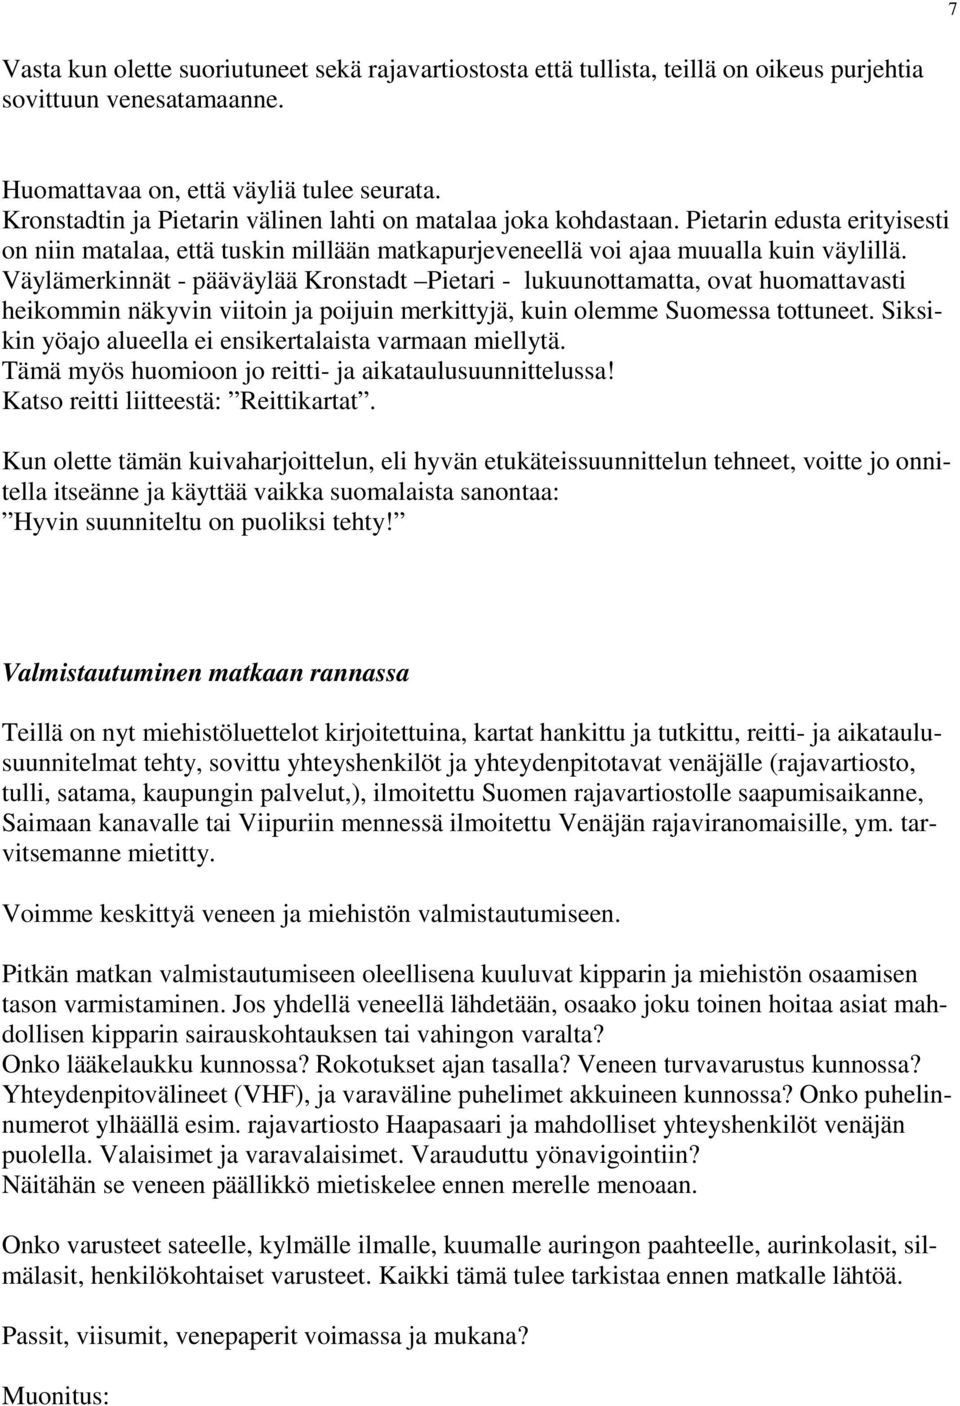 Väylämerkinnät - pääväylää Kronstadt Pietari - lukuunottamatta, ovat huomattavasti heikommin näkyvin viitoin ja poijuin merkittyjä, kuin olemme Suomessa tottuneet.